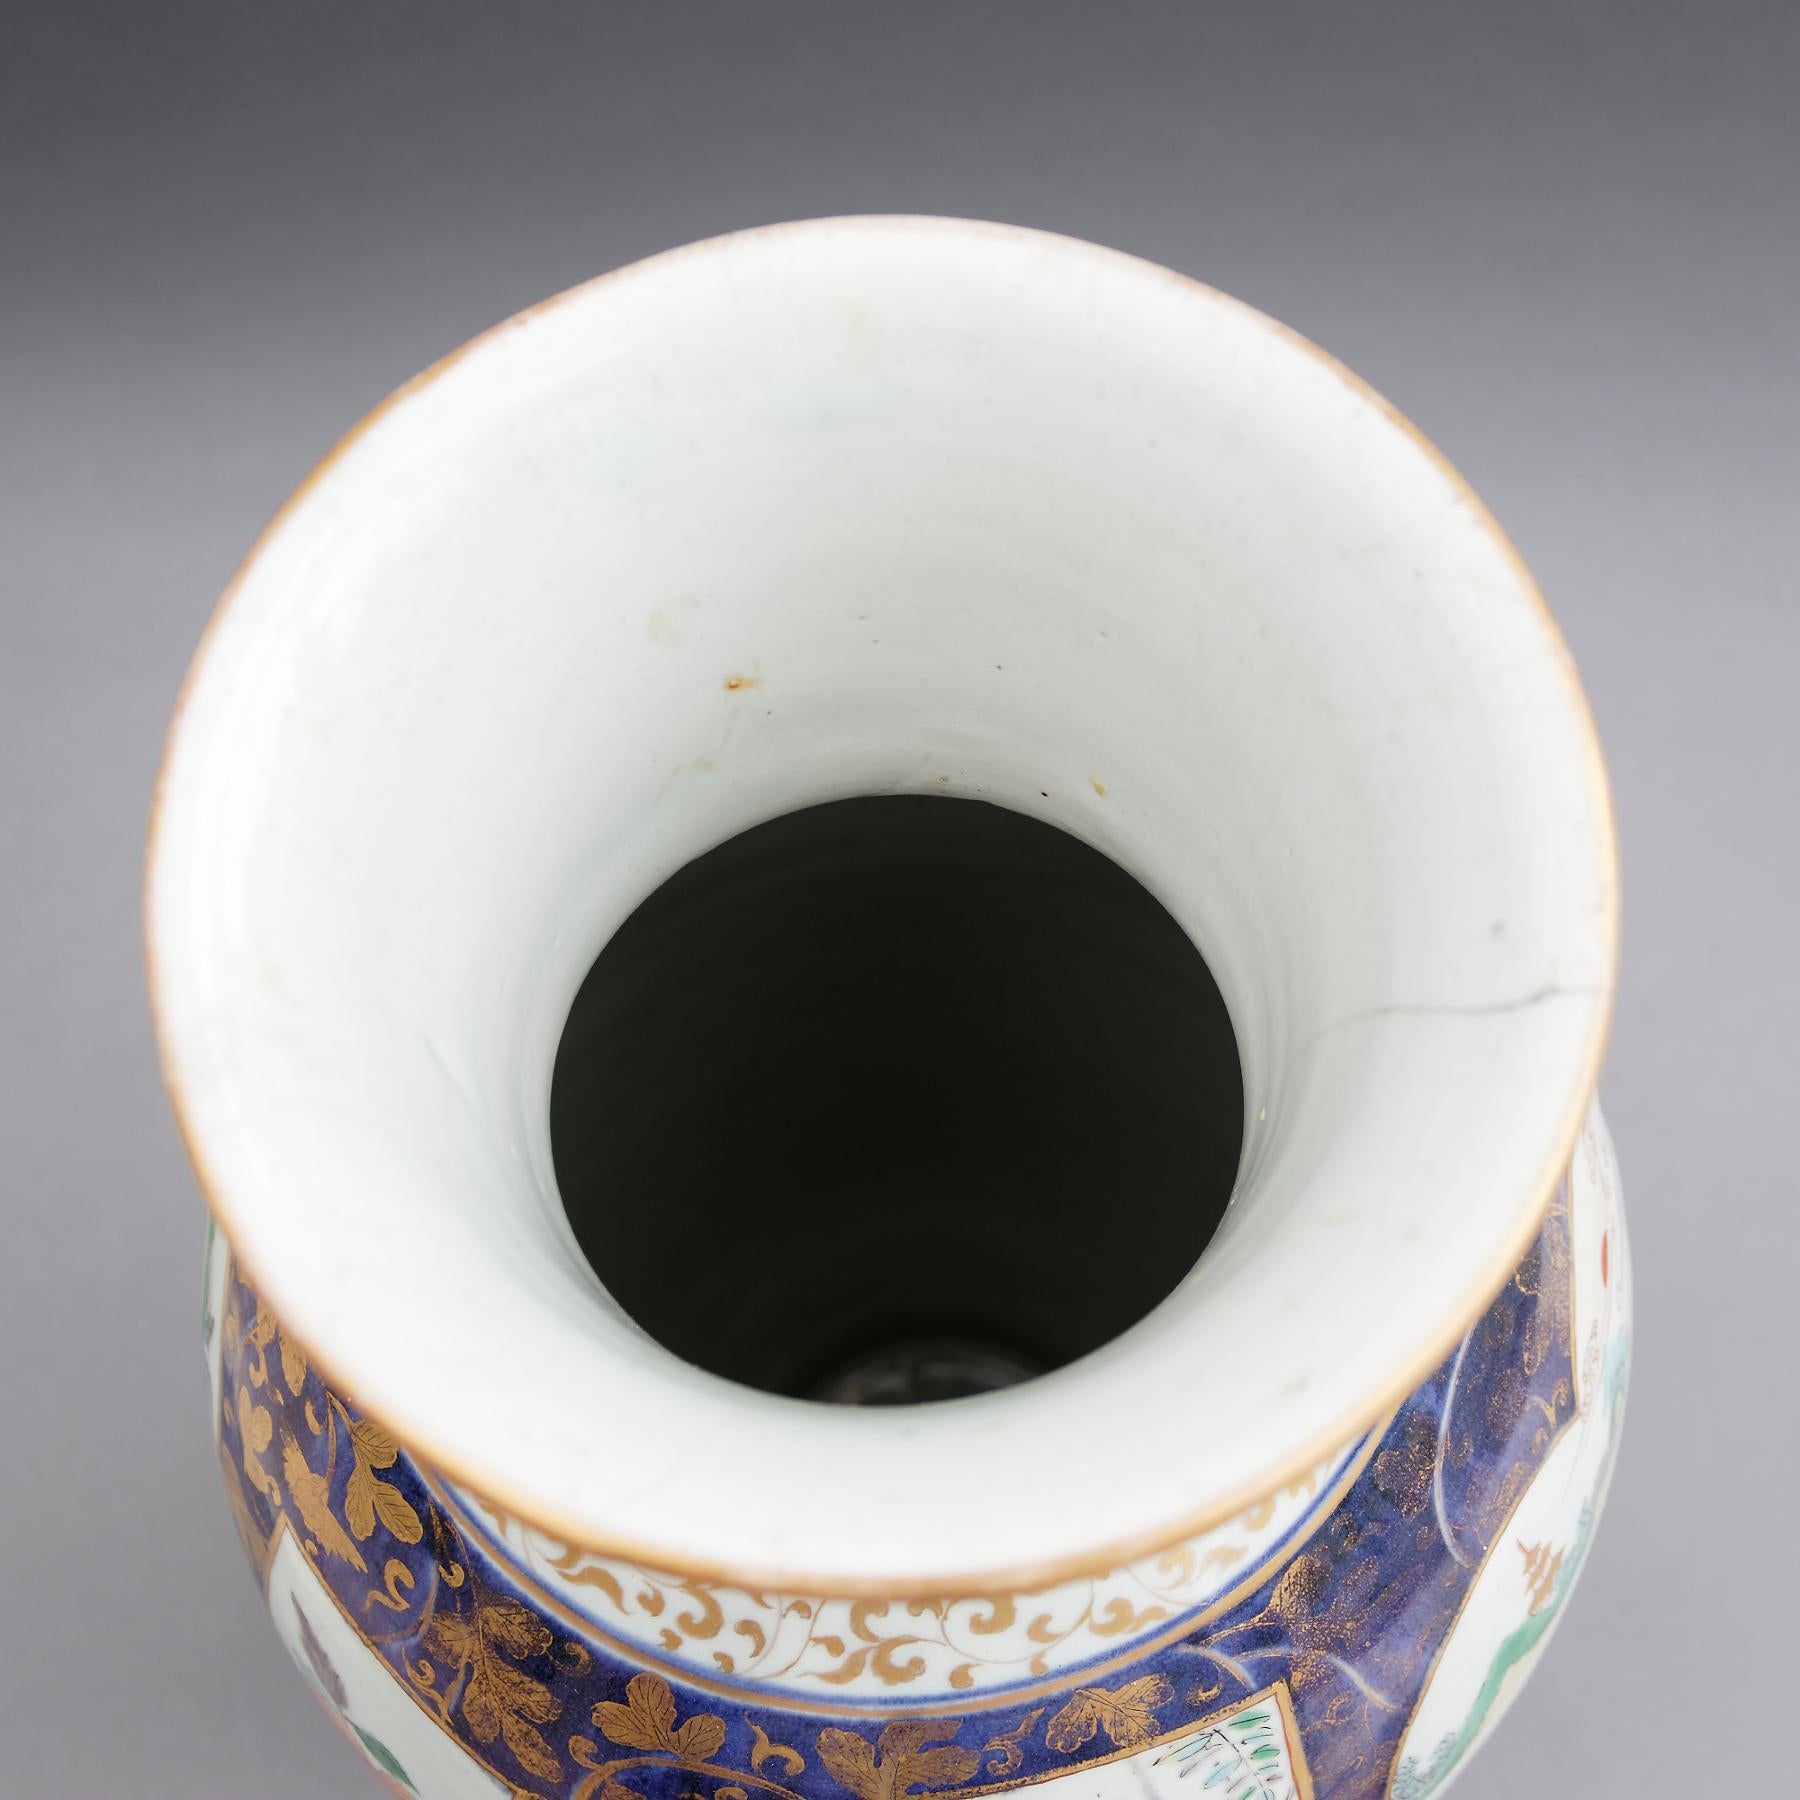 Rare vase Imari japonais de type gobelet, datant de la fin du XVIIe siècle et du début du XVIIIe siècle, en porcelaine de forme ovoïde allongée avec un col évasé, peint dans la palette Imari de bleu sous glaçure et d'émail sur glaçure rouge fer et